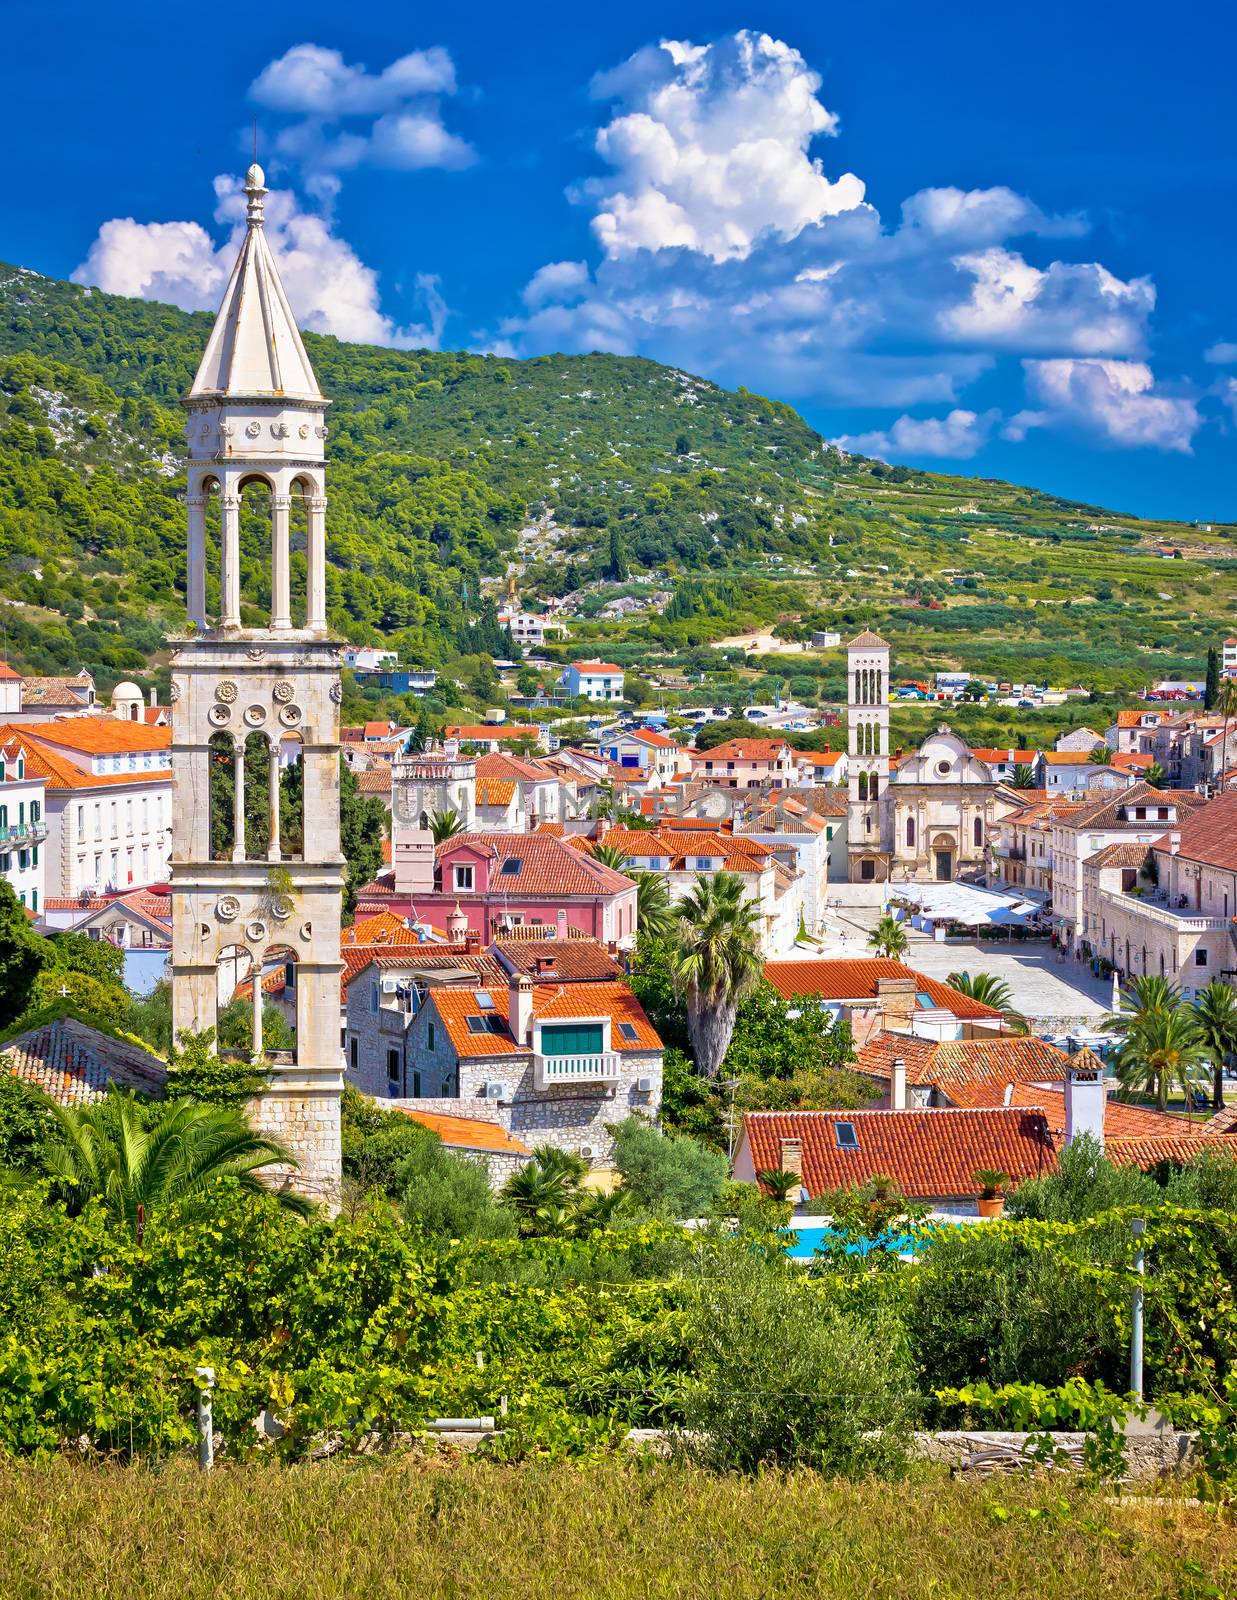 Hvar architecture and nature vertical view, Dalmatia, Croatia